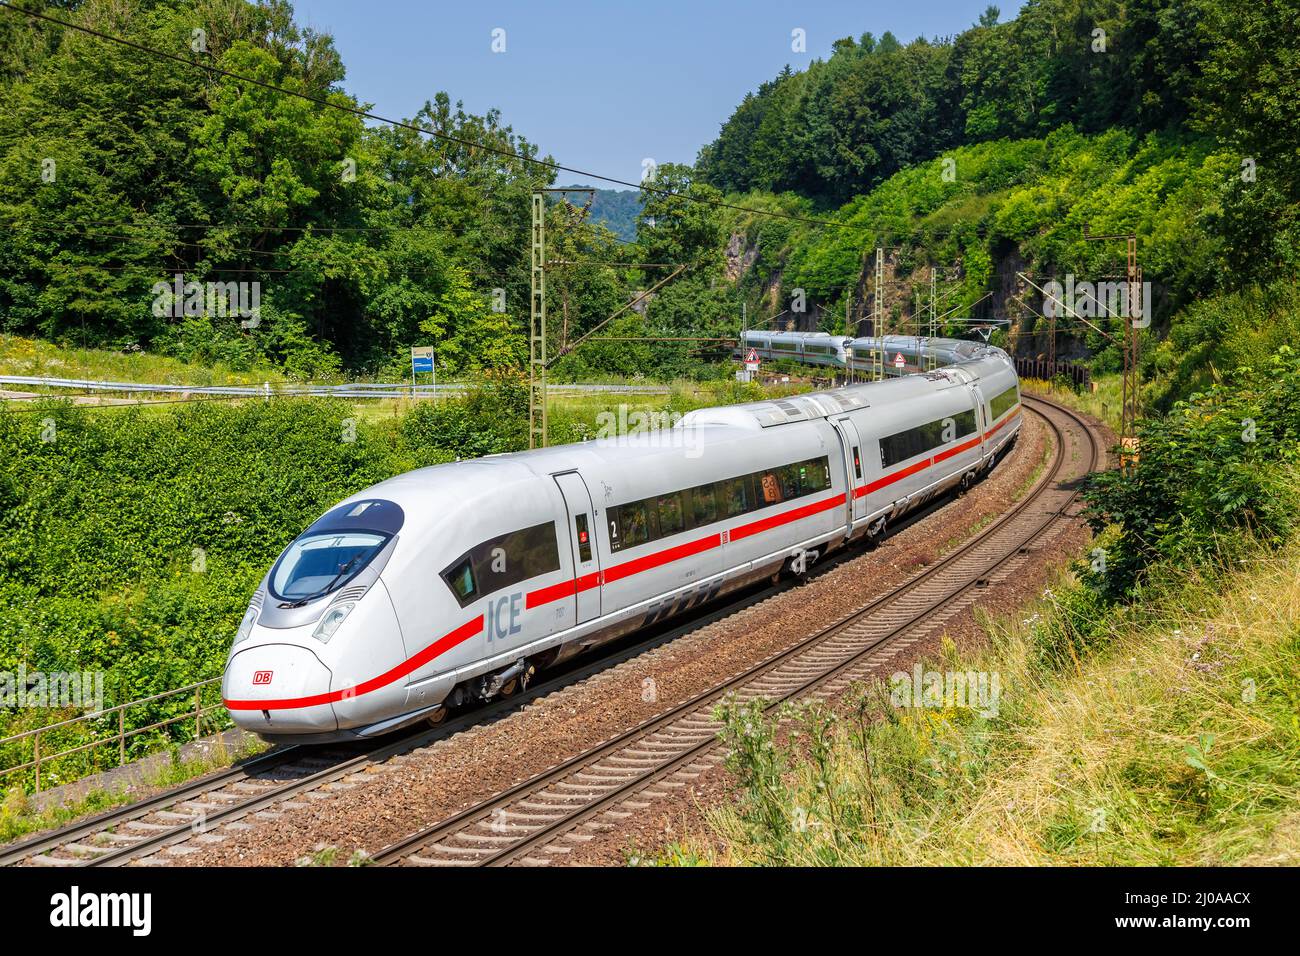 Amstetten, Germany - July 21, 2021: ICE 3 high-speed train of Deutsche Bahn on Geislinger Steige near Amstetten, Germany. Stock Photo